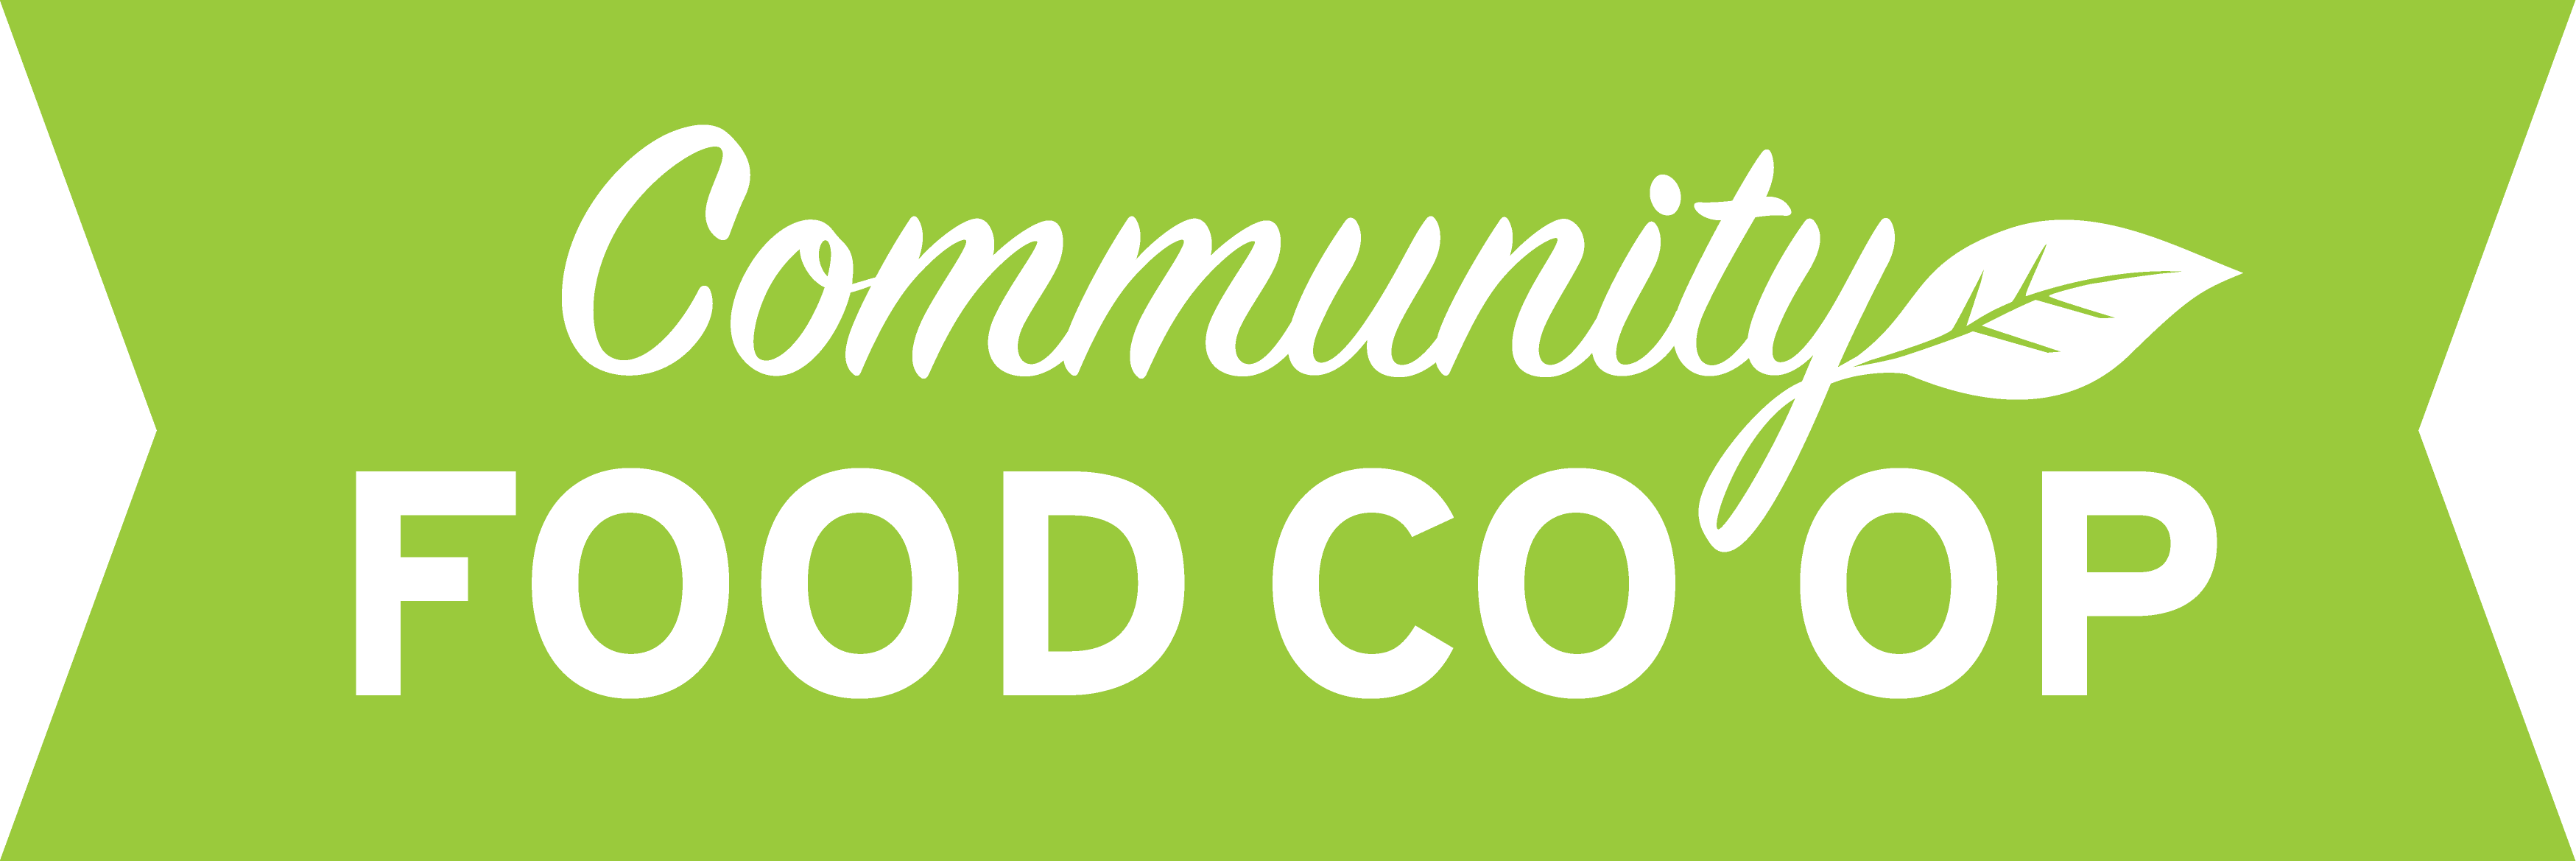 Community Food Coop